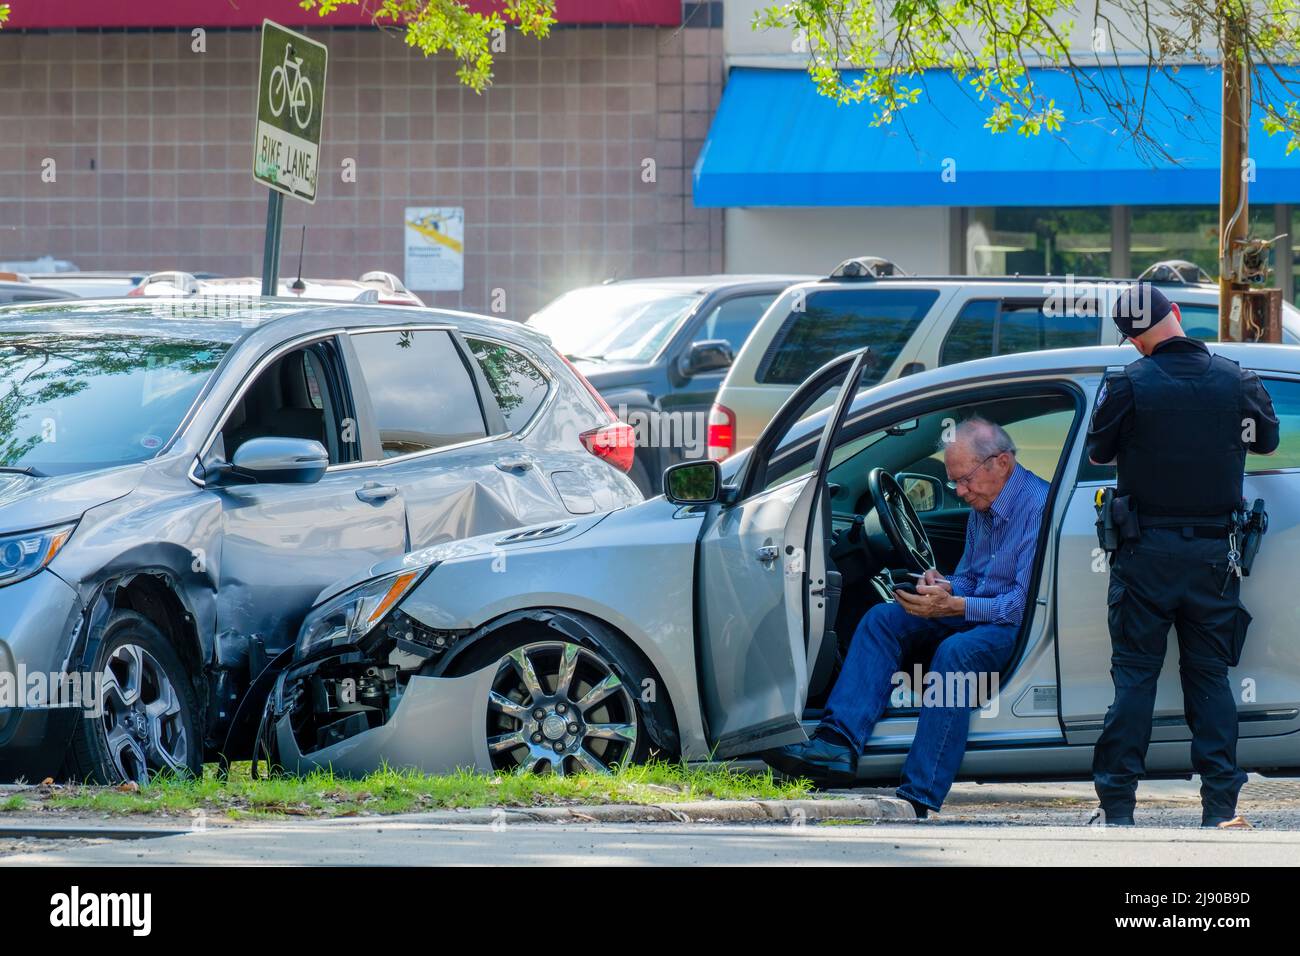 NEW ORLEANS, LA, USA - 9. MAI 2022: Autounfall-Szene mit beschädigten Autos, Polizist beim Schreiben einer Fahrkarte und Fahrer (Telefonwahl) Stockfoto